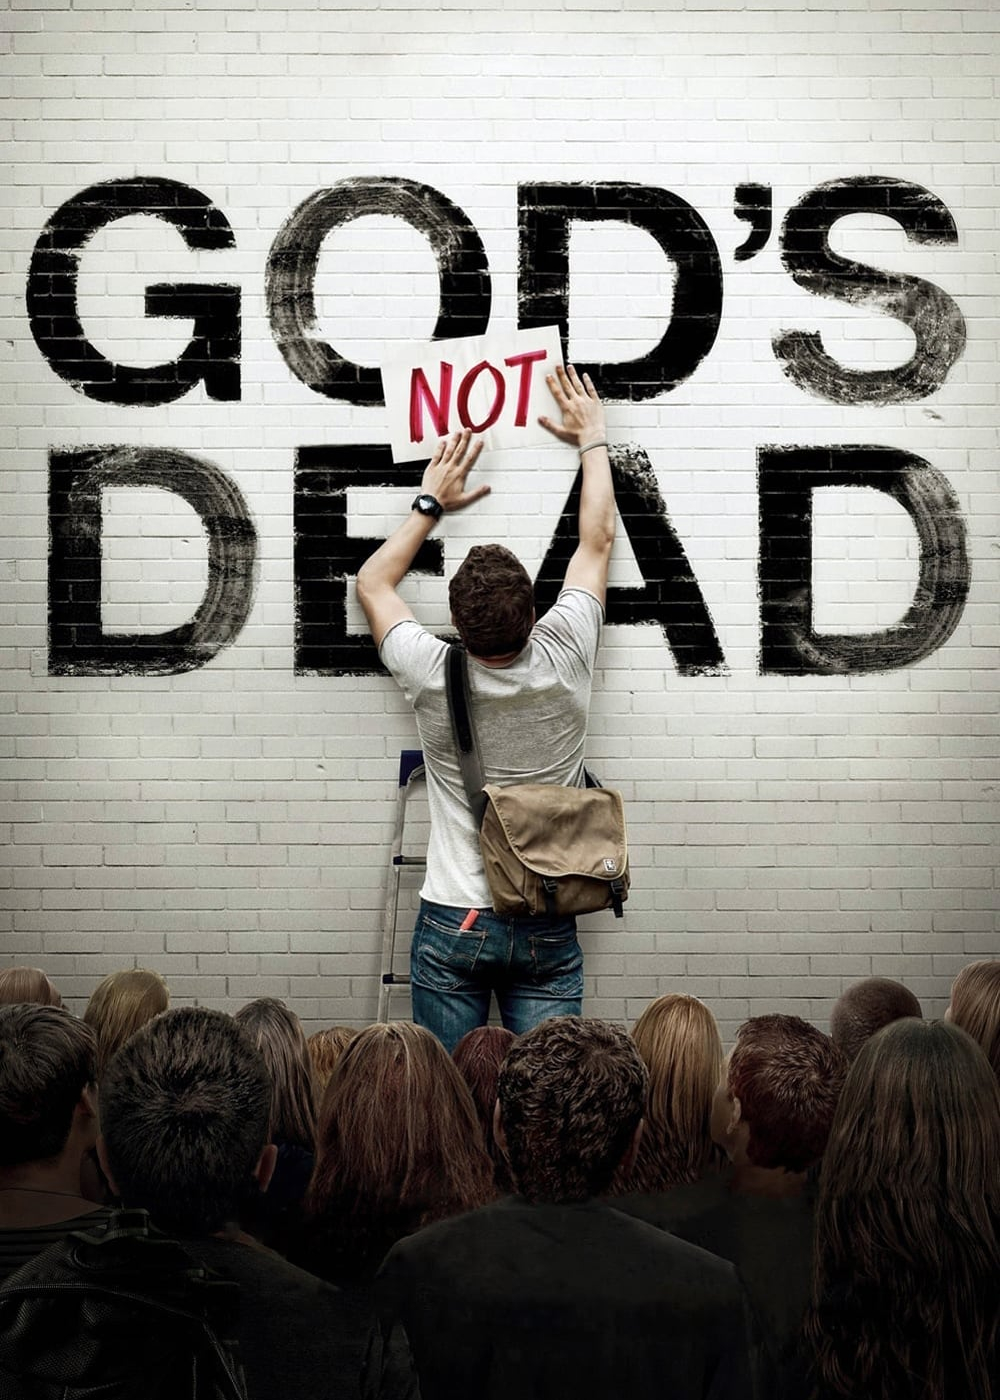 God’s Not Dead